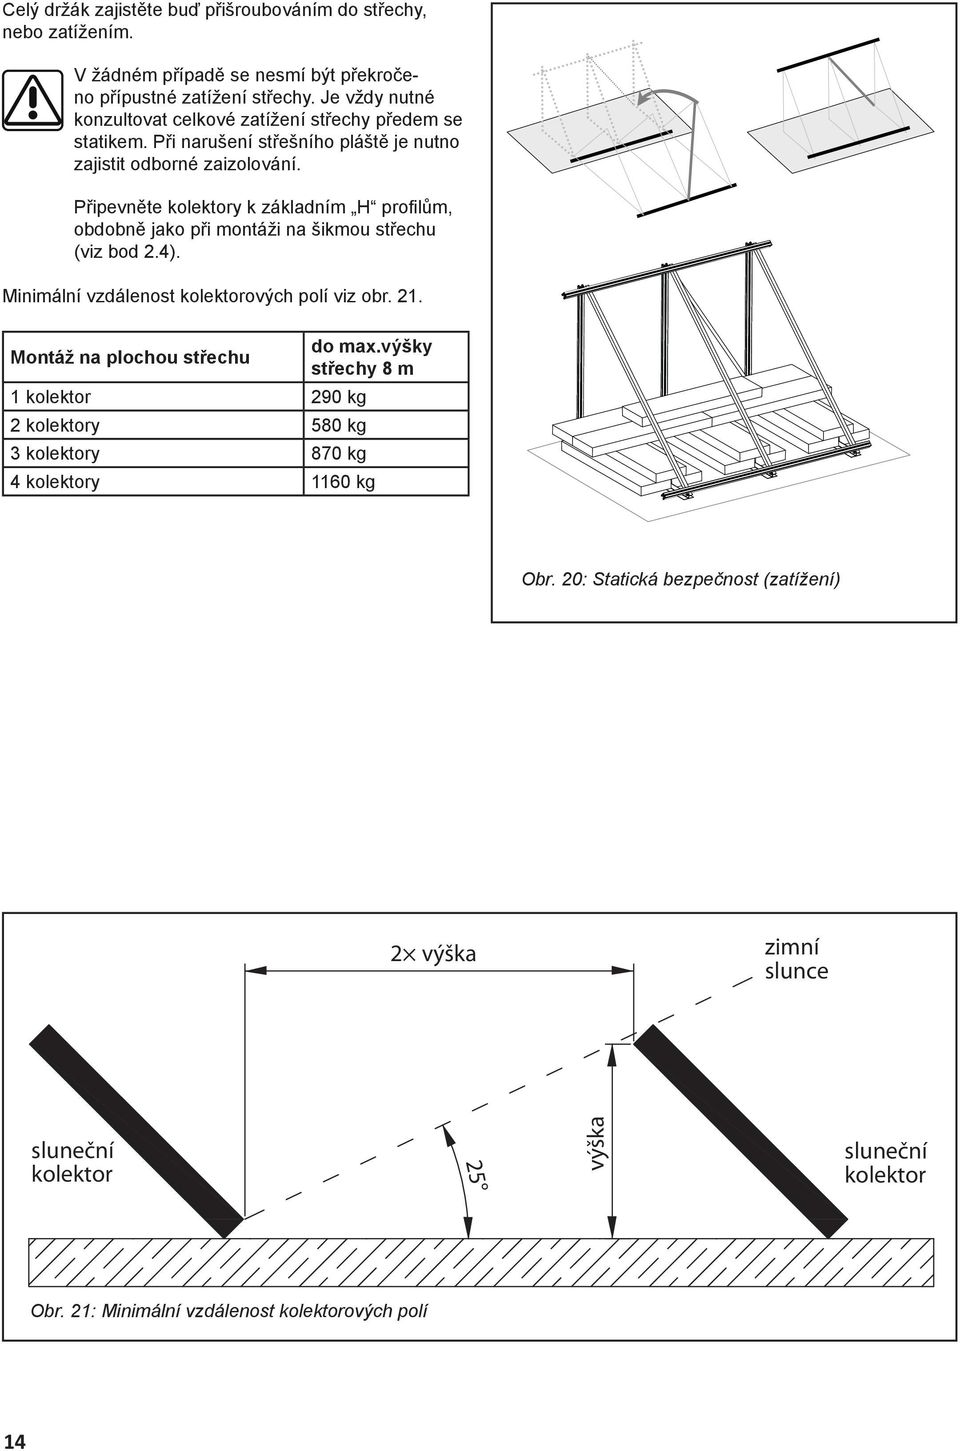 Připevněte kolektory k základním H profi lům, obdobně jako při montáži na šikmou střechu (viz bod 2.4). Minimální vzdálenost kolektorových polí viz obr. 21.